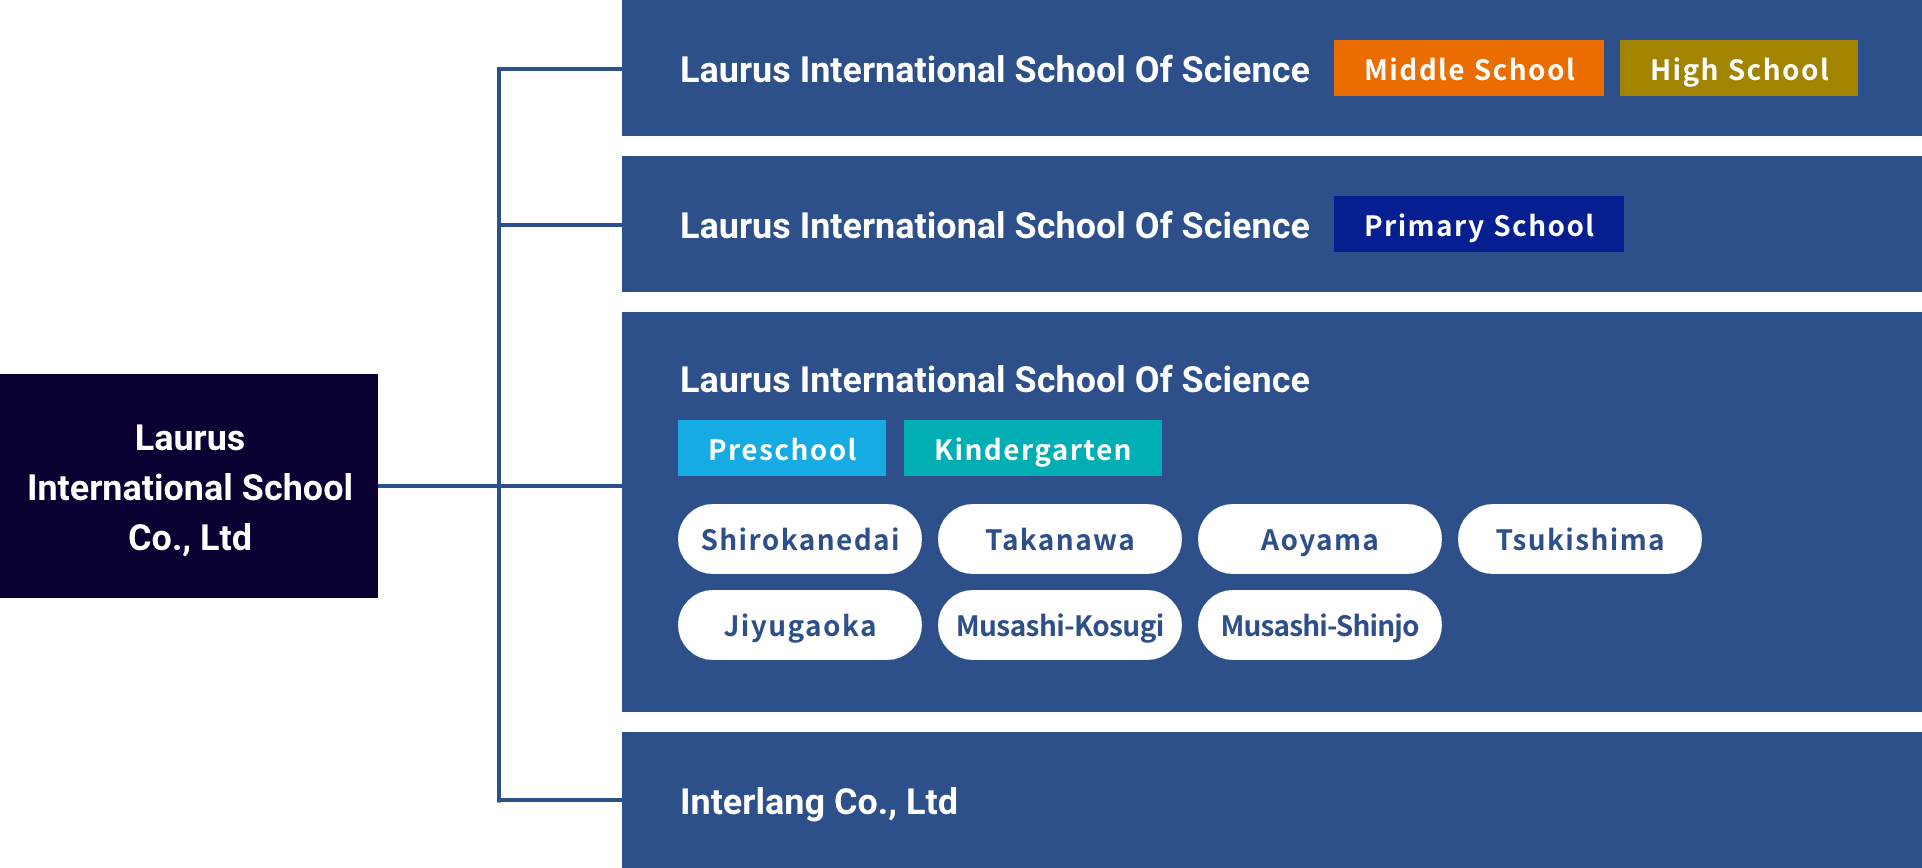 Laurus International Co., Ltd/Shirokanedai/Takanawa/Aoyama/Tsukishima/Den-en-chofu/Musashi-Kosugi/Musashi-Shinjo